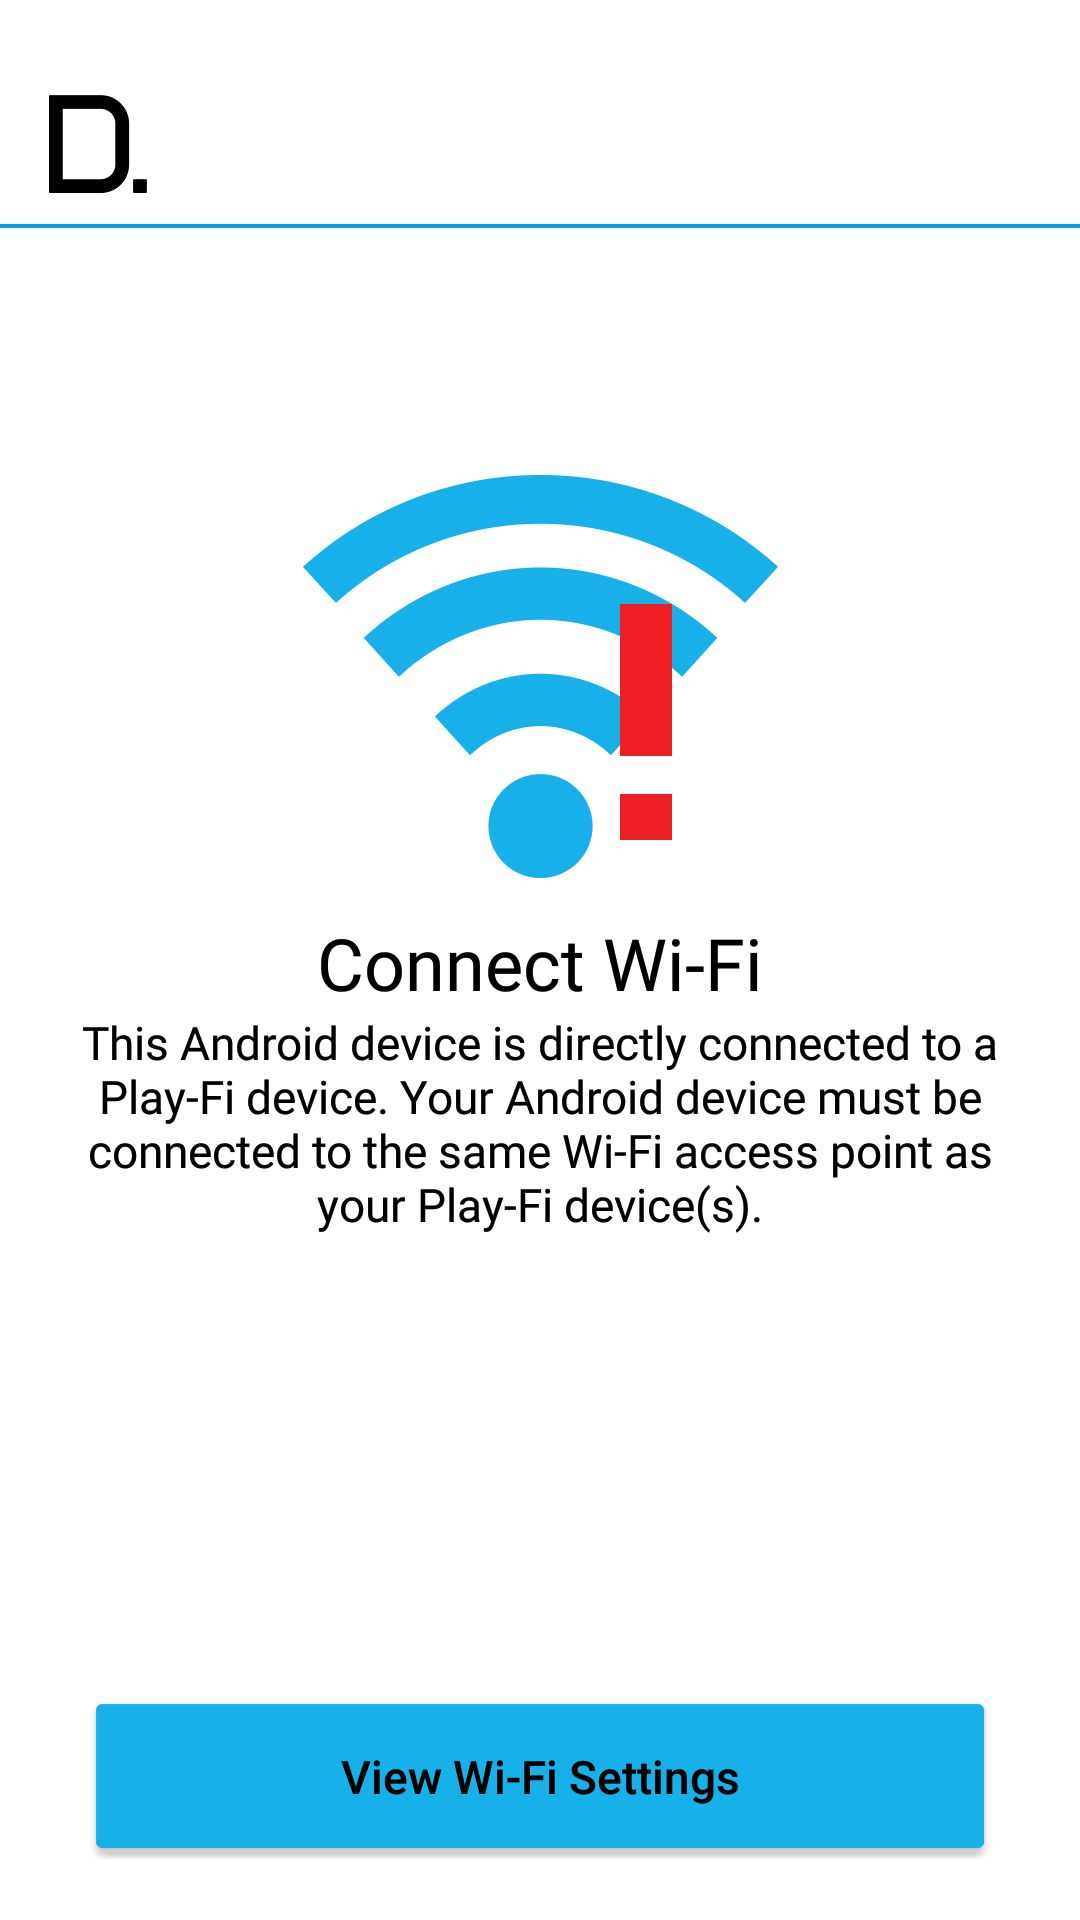 Ups, to nie odkurzacz Xiaomi, nie należy łączyć się bezpośrednio z punktem Play-Fi, mimo że rozgłasza IP po  DHCP...